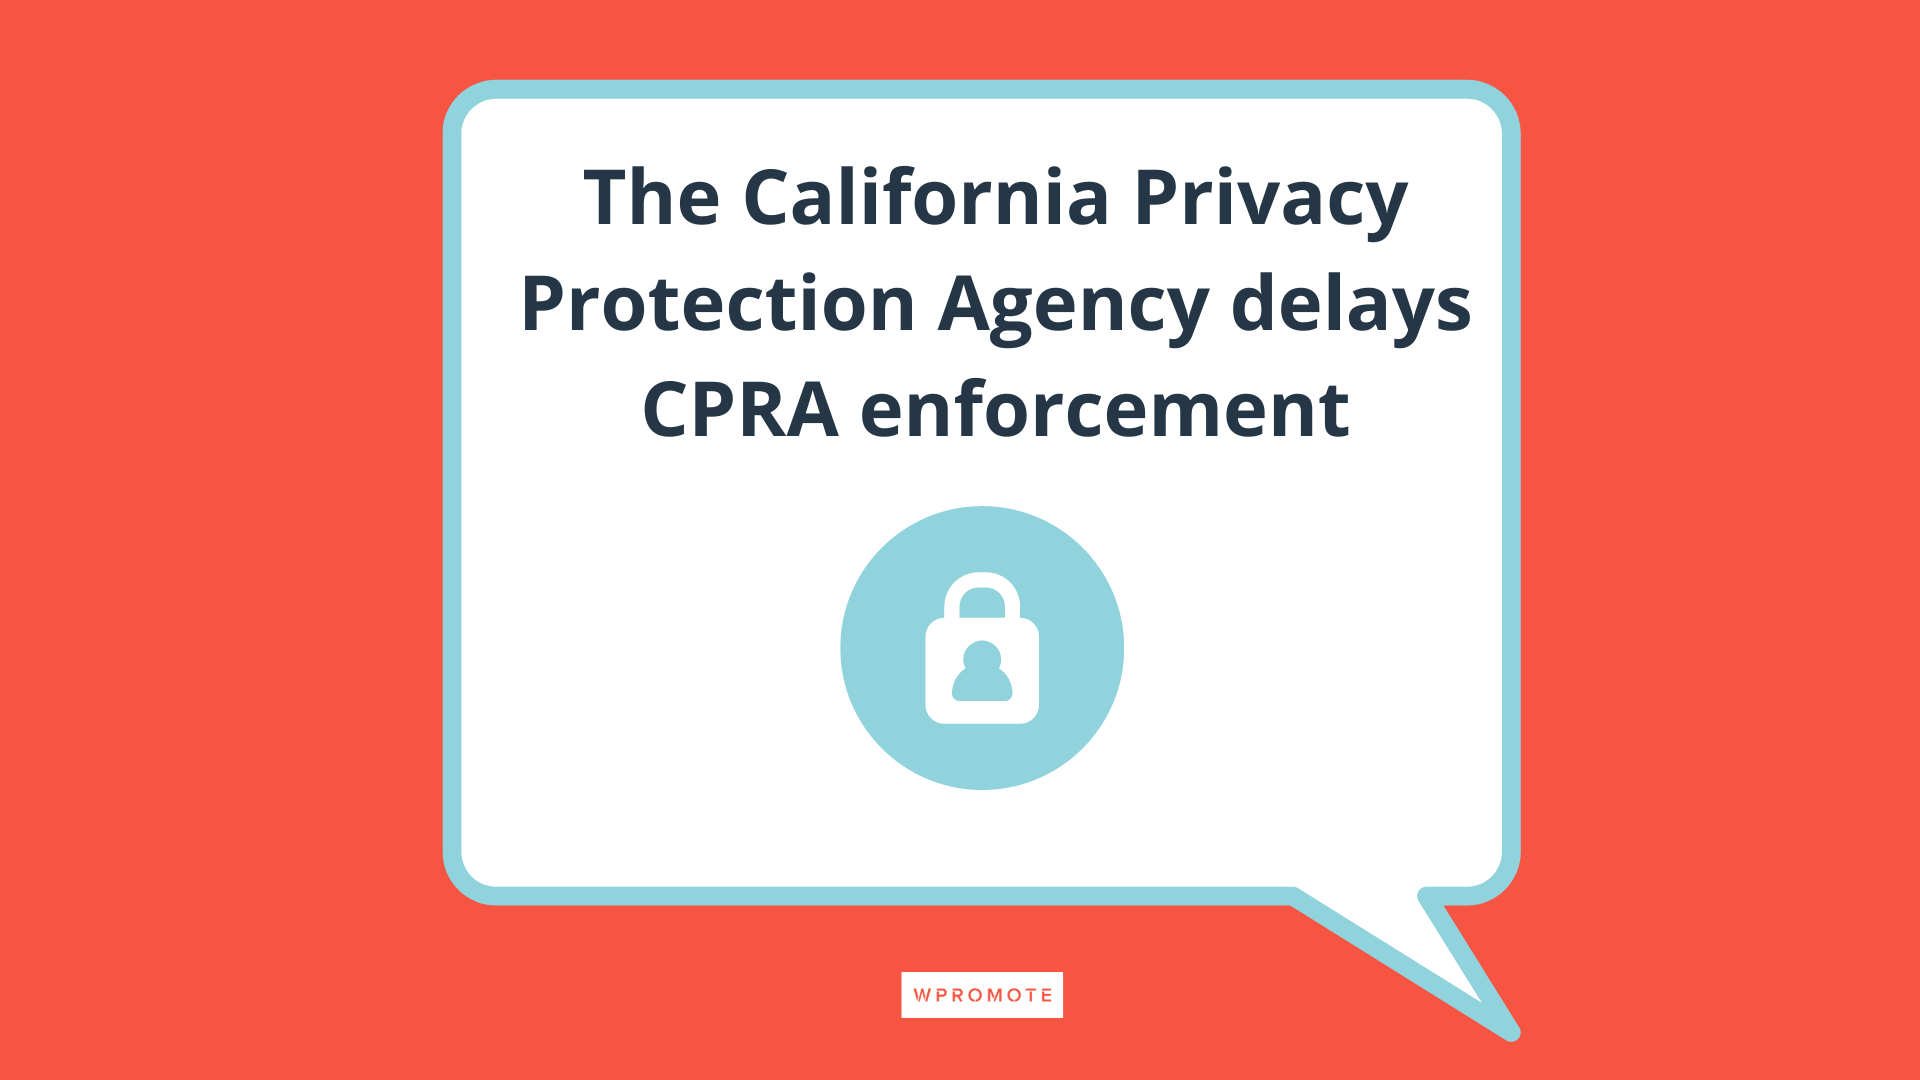 La Agencia de Protección de la Privacidad de California retrasa la aplicación de la CPRA en un bocadillo de diálogo